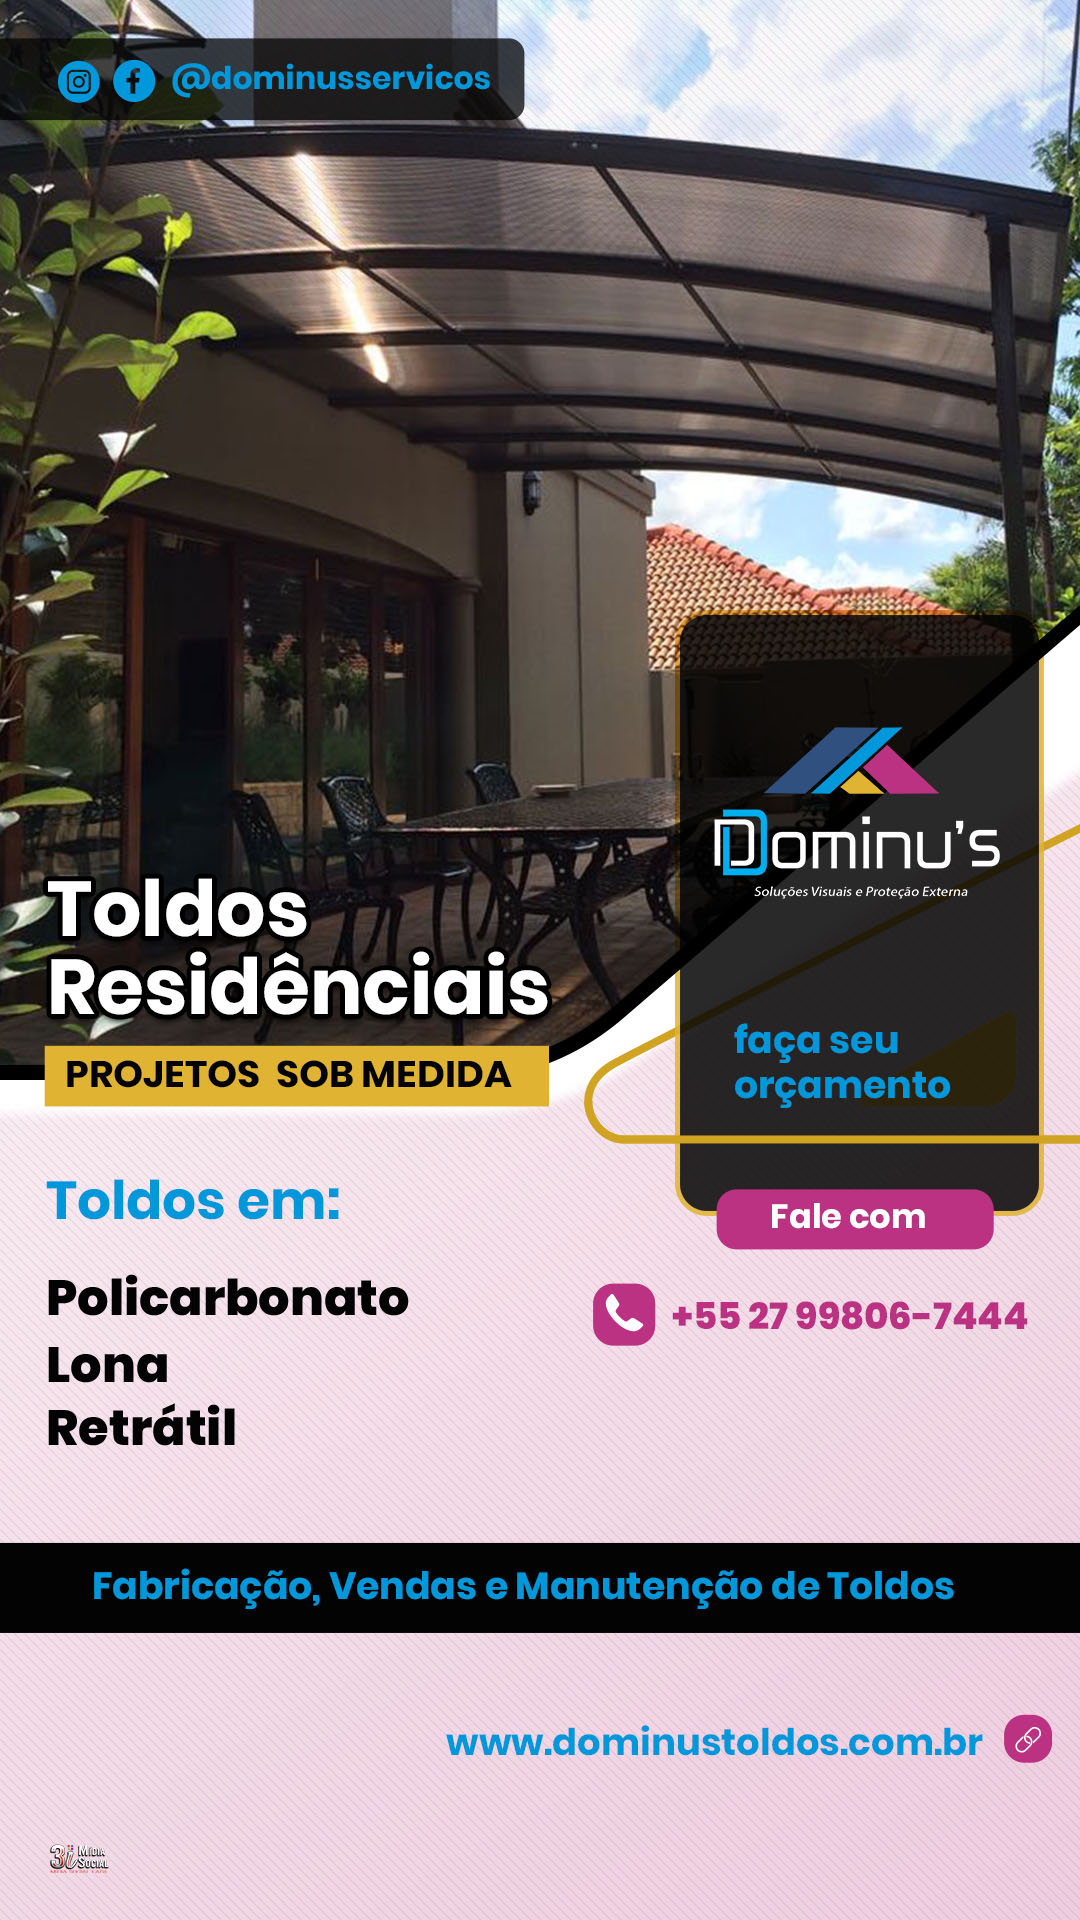 stories - Dominus 2024 - toldos residenciais - 03